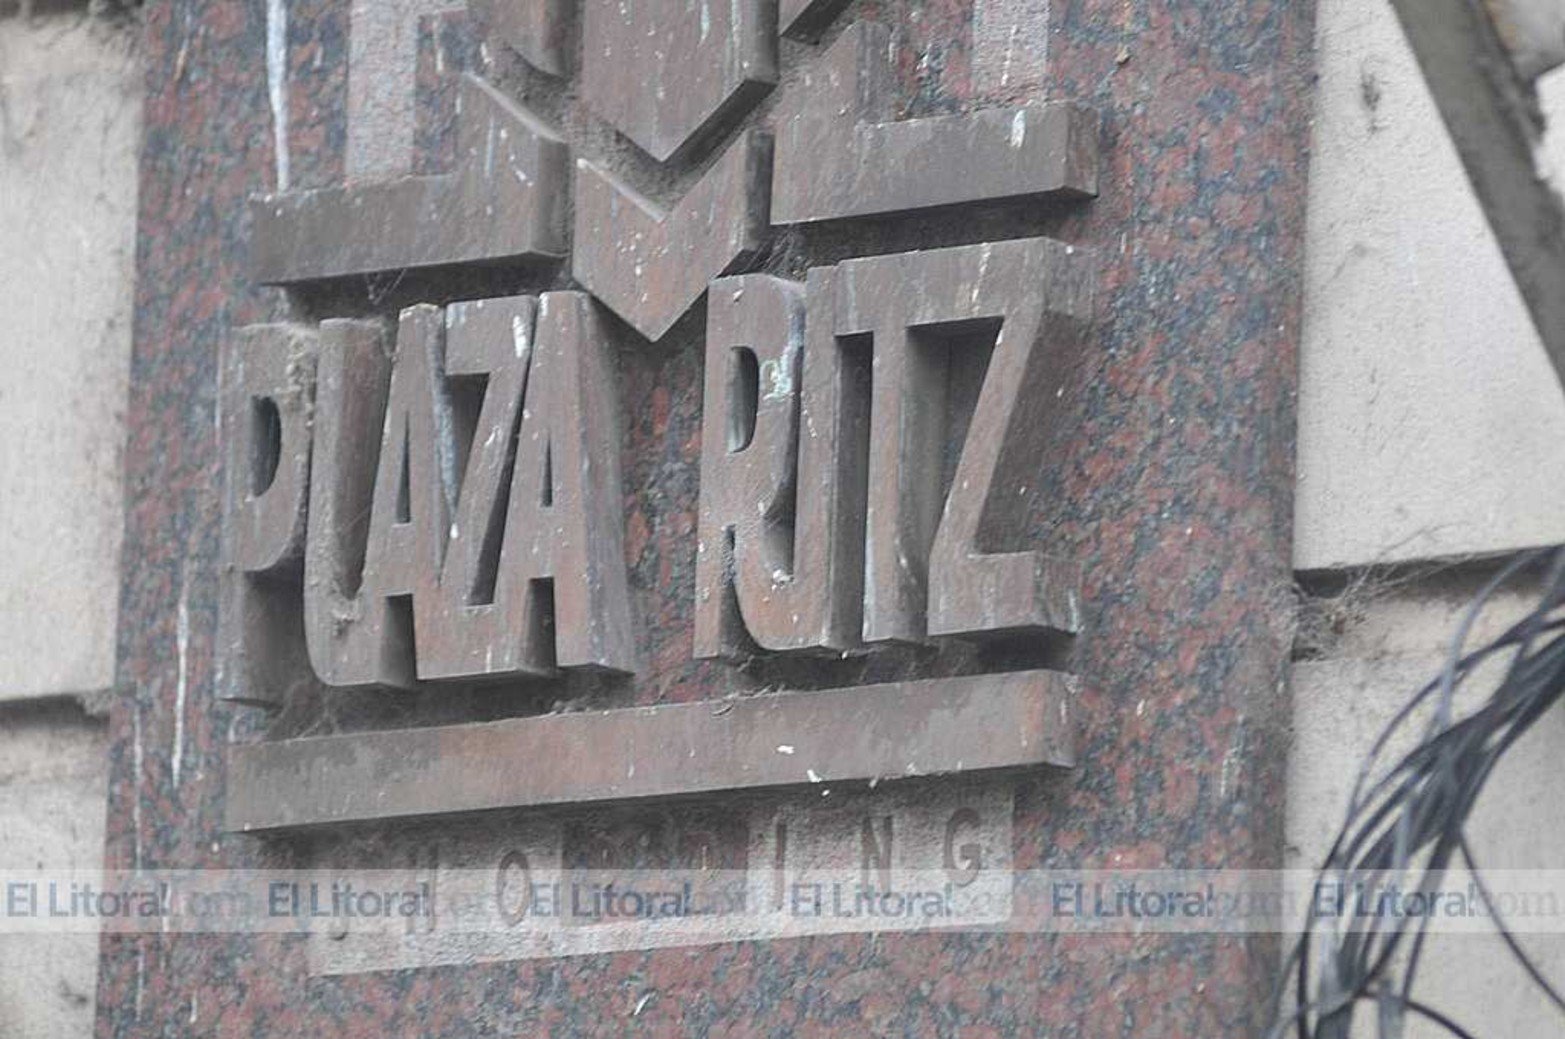 Signos de abandono y vandalismo en el edifio del ex hotel Plaza Ritz